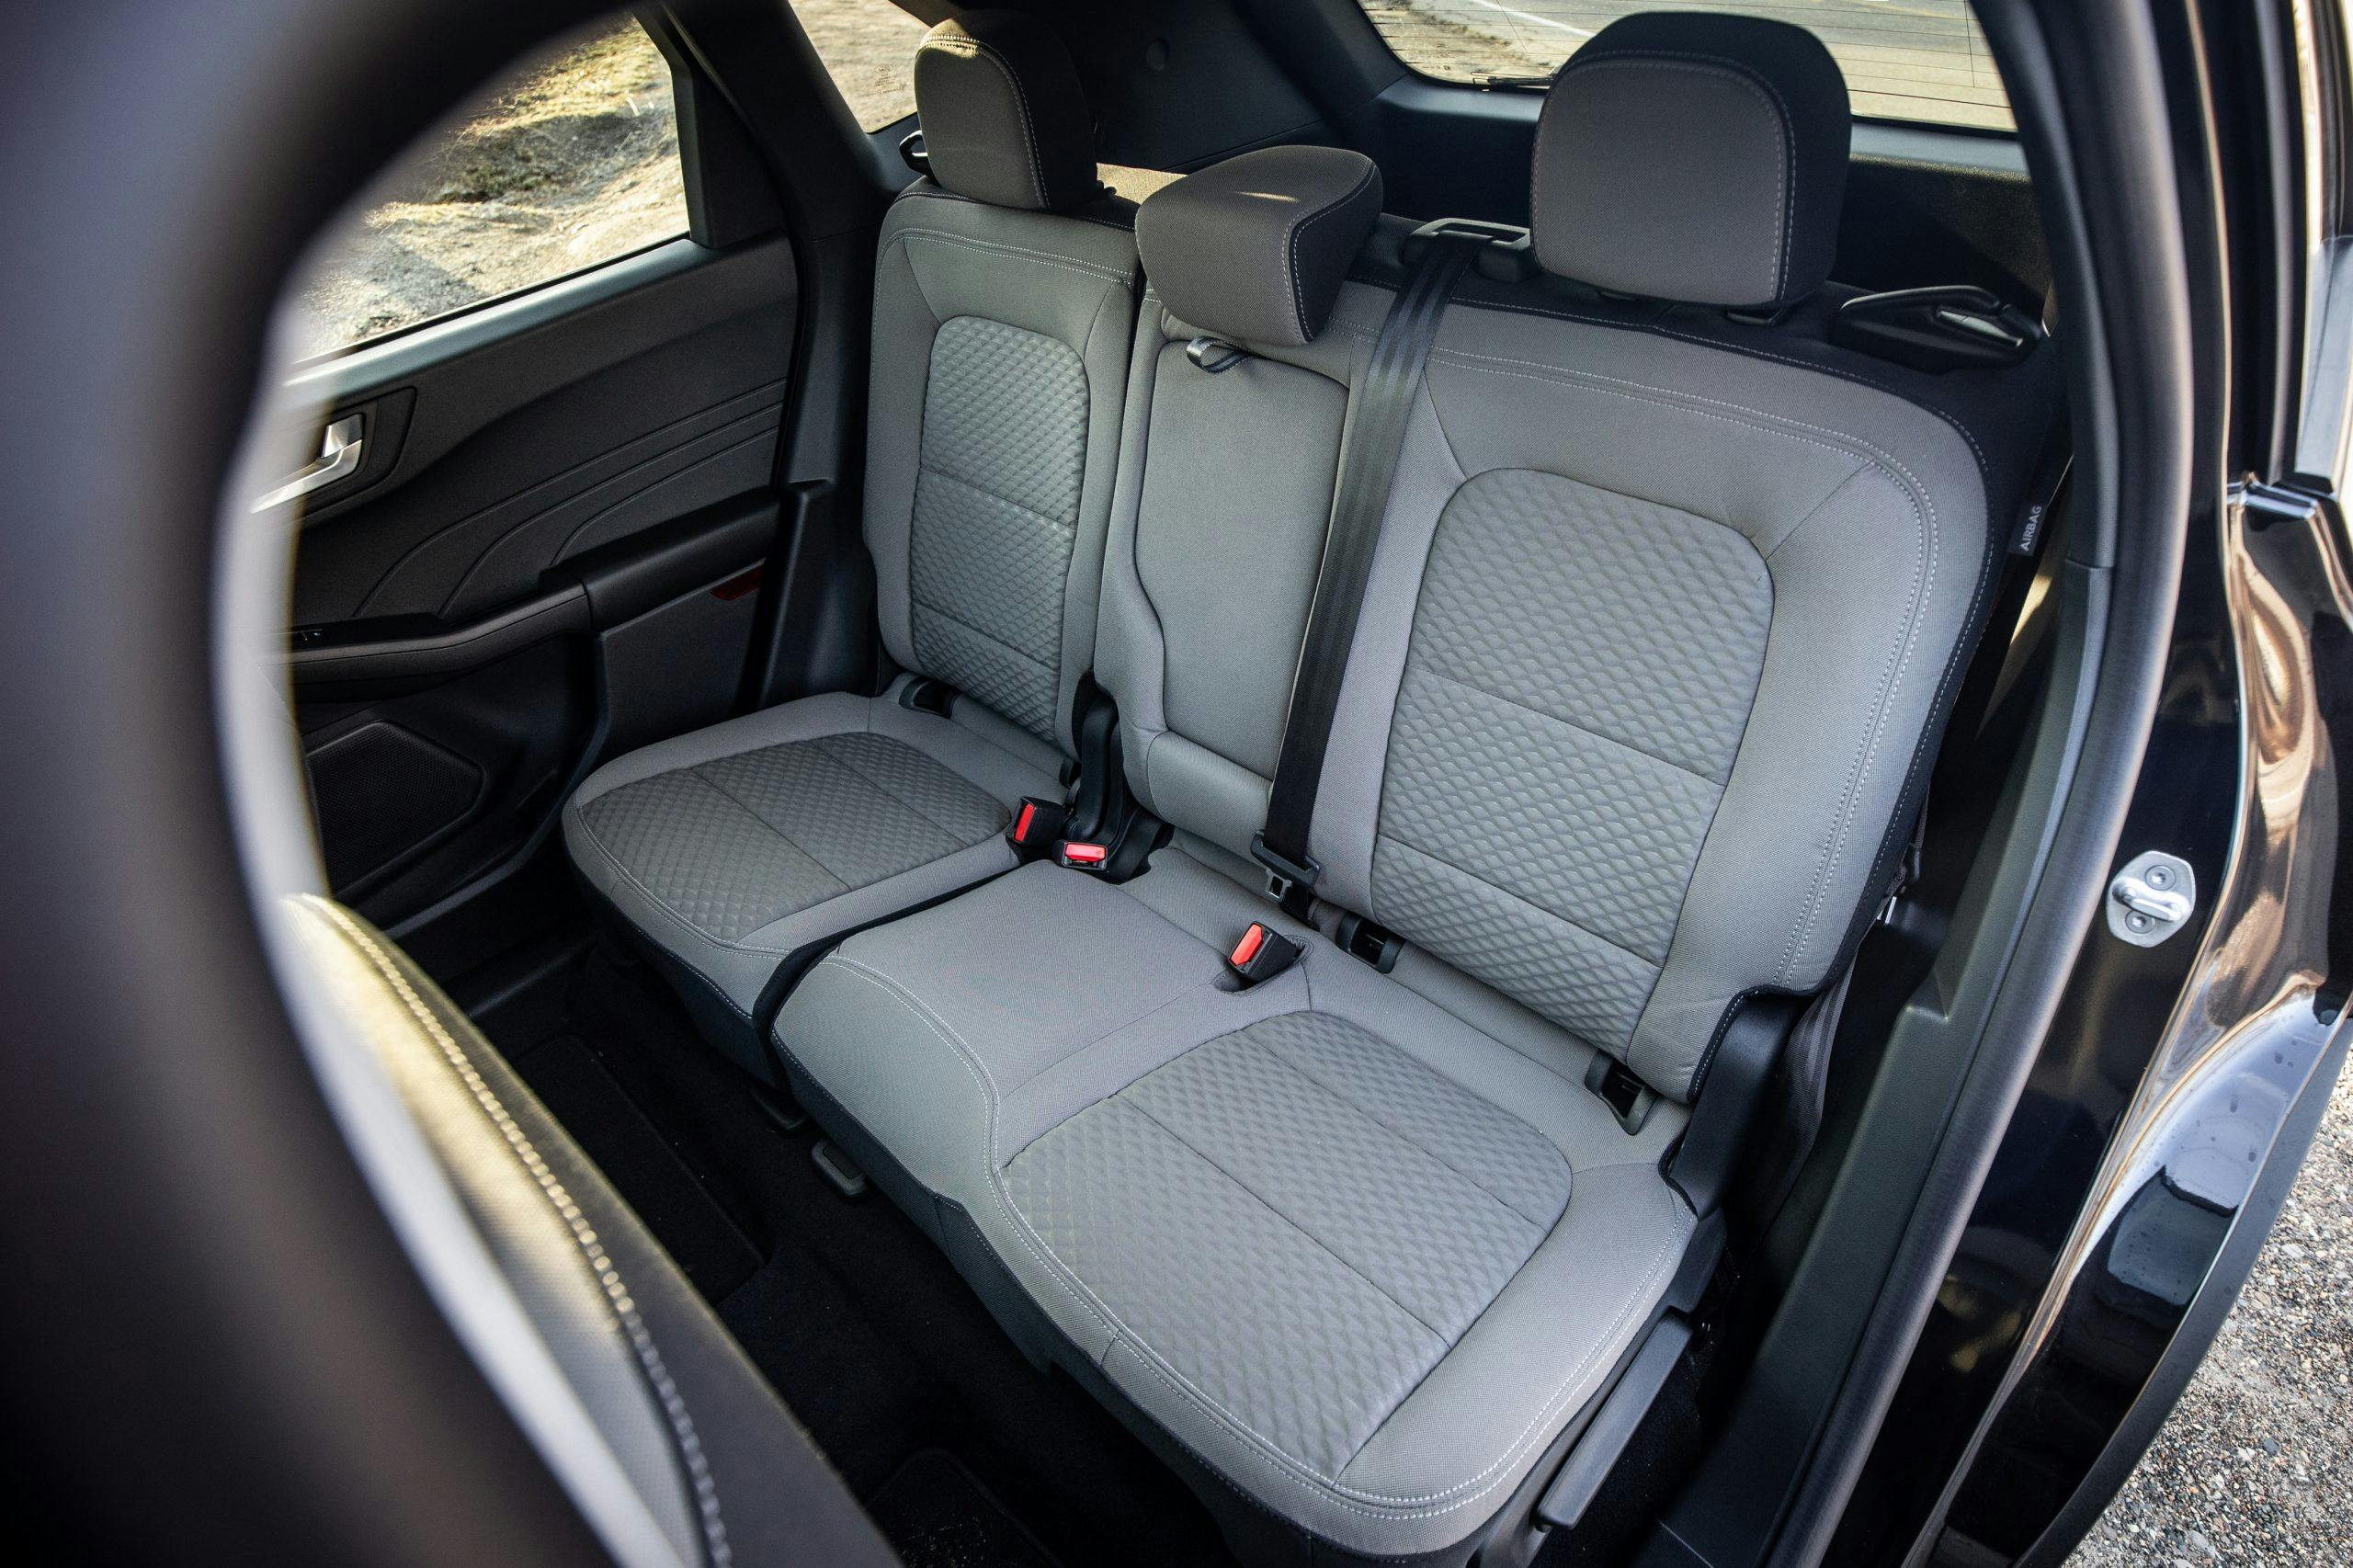 2021 Ford Escape PHEV interior rear seat